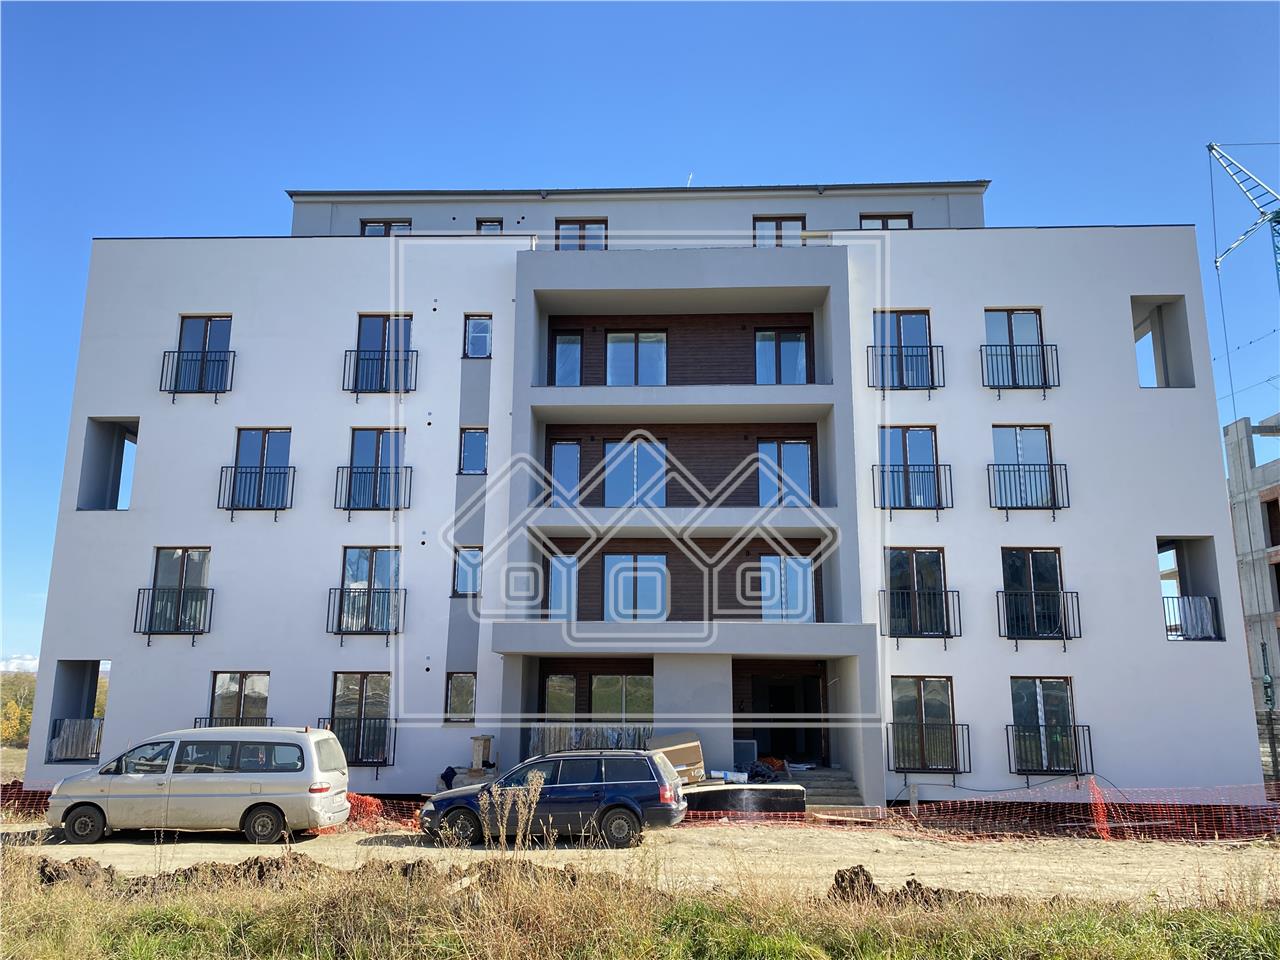 Apartament de vanzare in Sibiu - C4 - 2 balcoane, boxa, loc de parcare